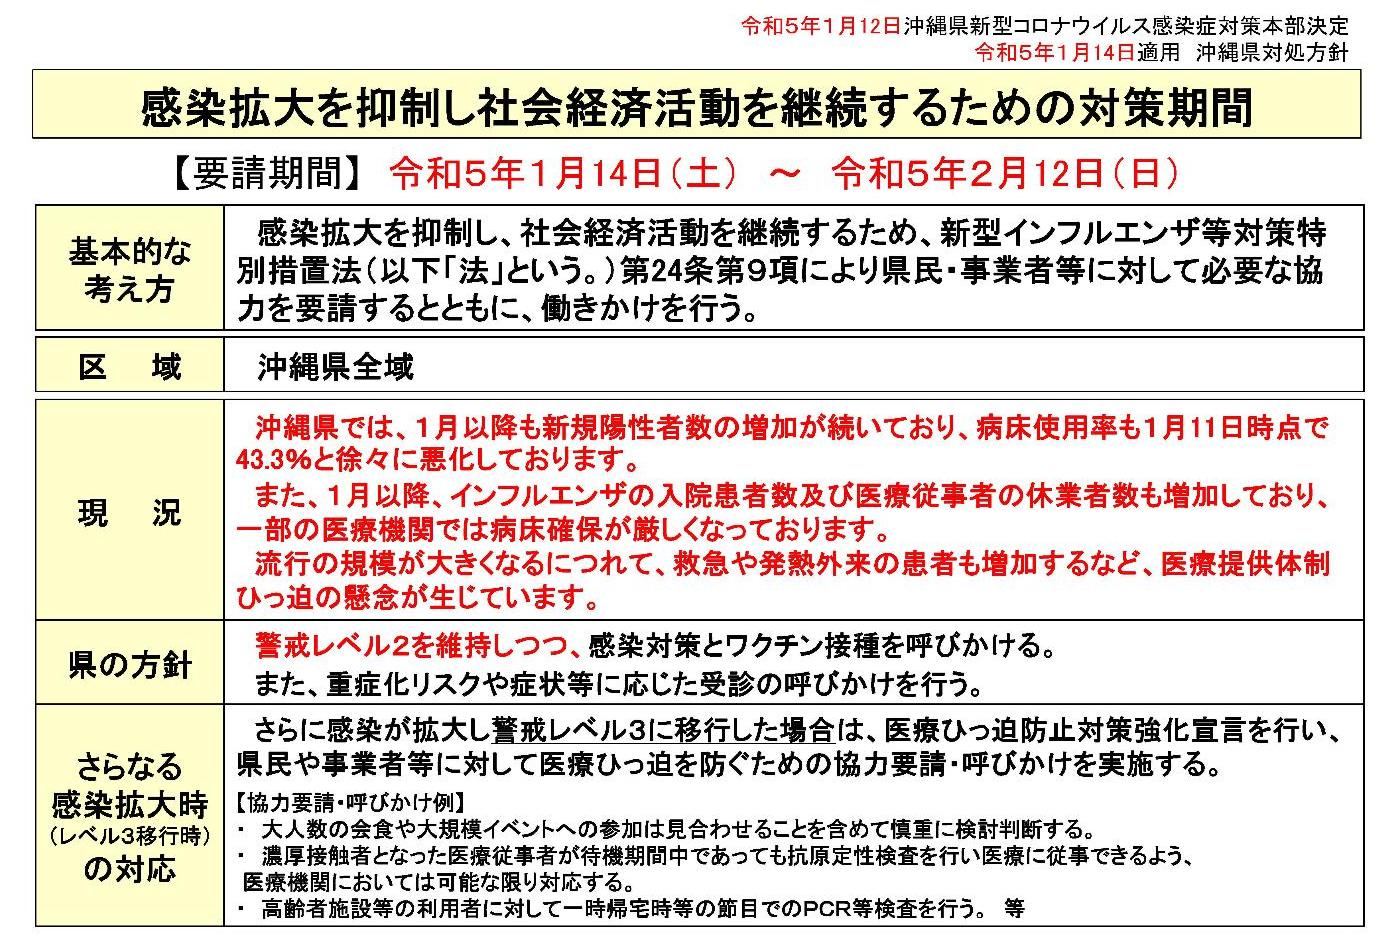 【R5.1.14適用】沖縄県対処方針